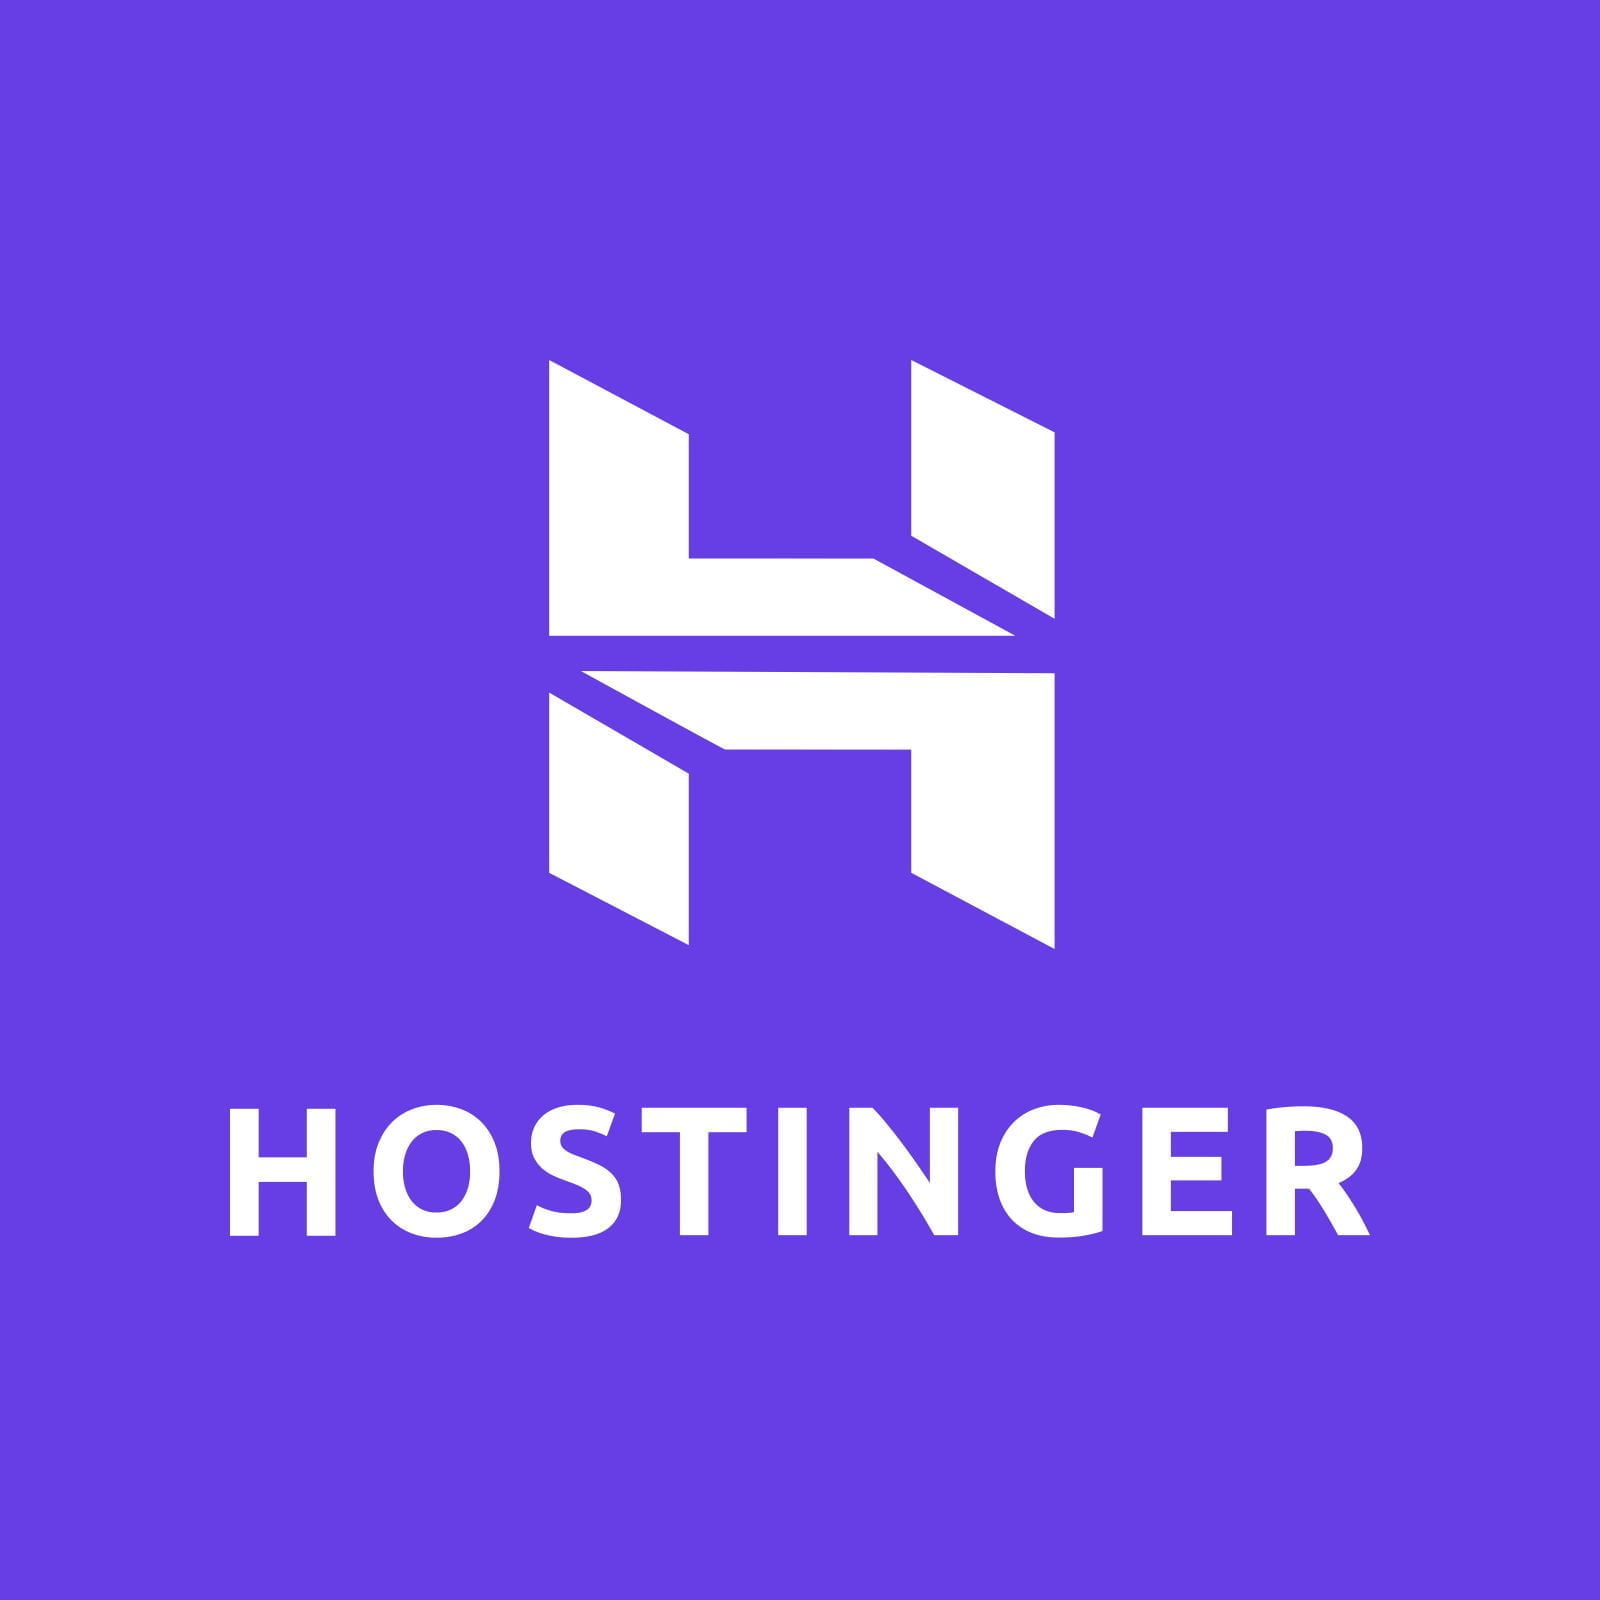 En este momento estás viendo Hostinger: alojamiento web de calidad a precios muy bajos